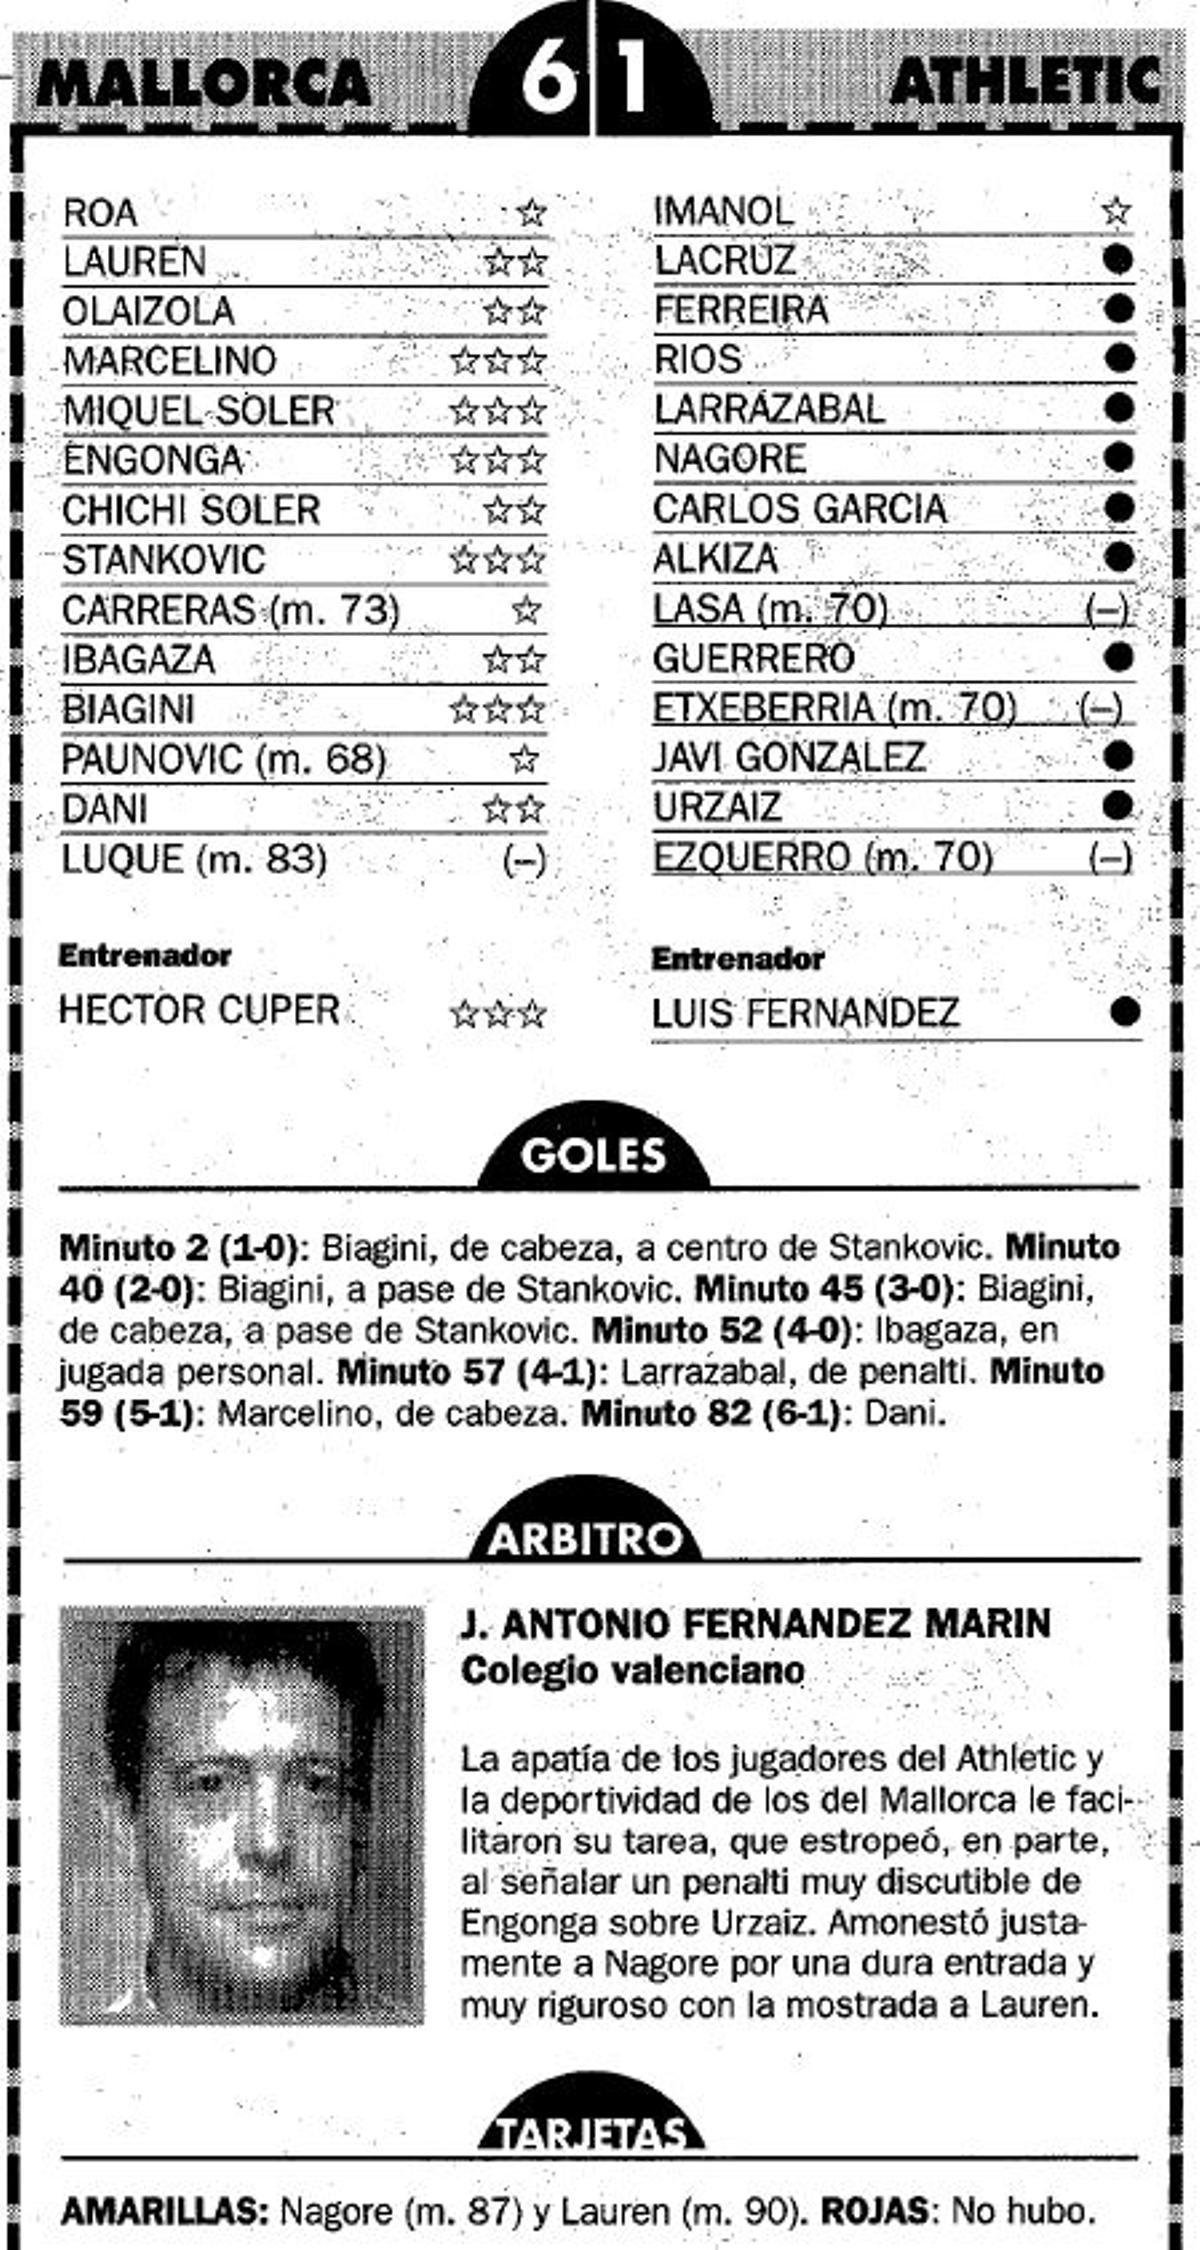 Ficha técnica del 6-1 del Malloca al Athletic en 1999